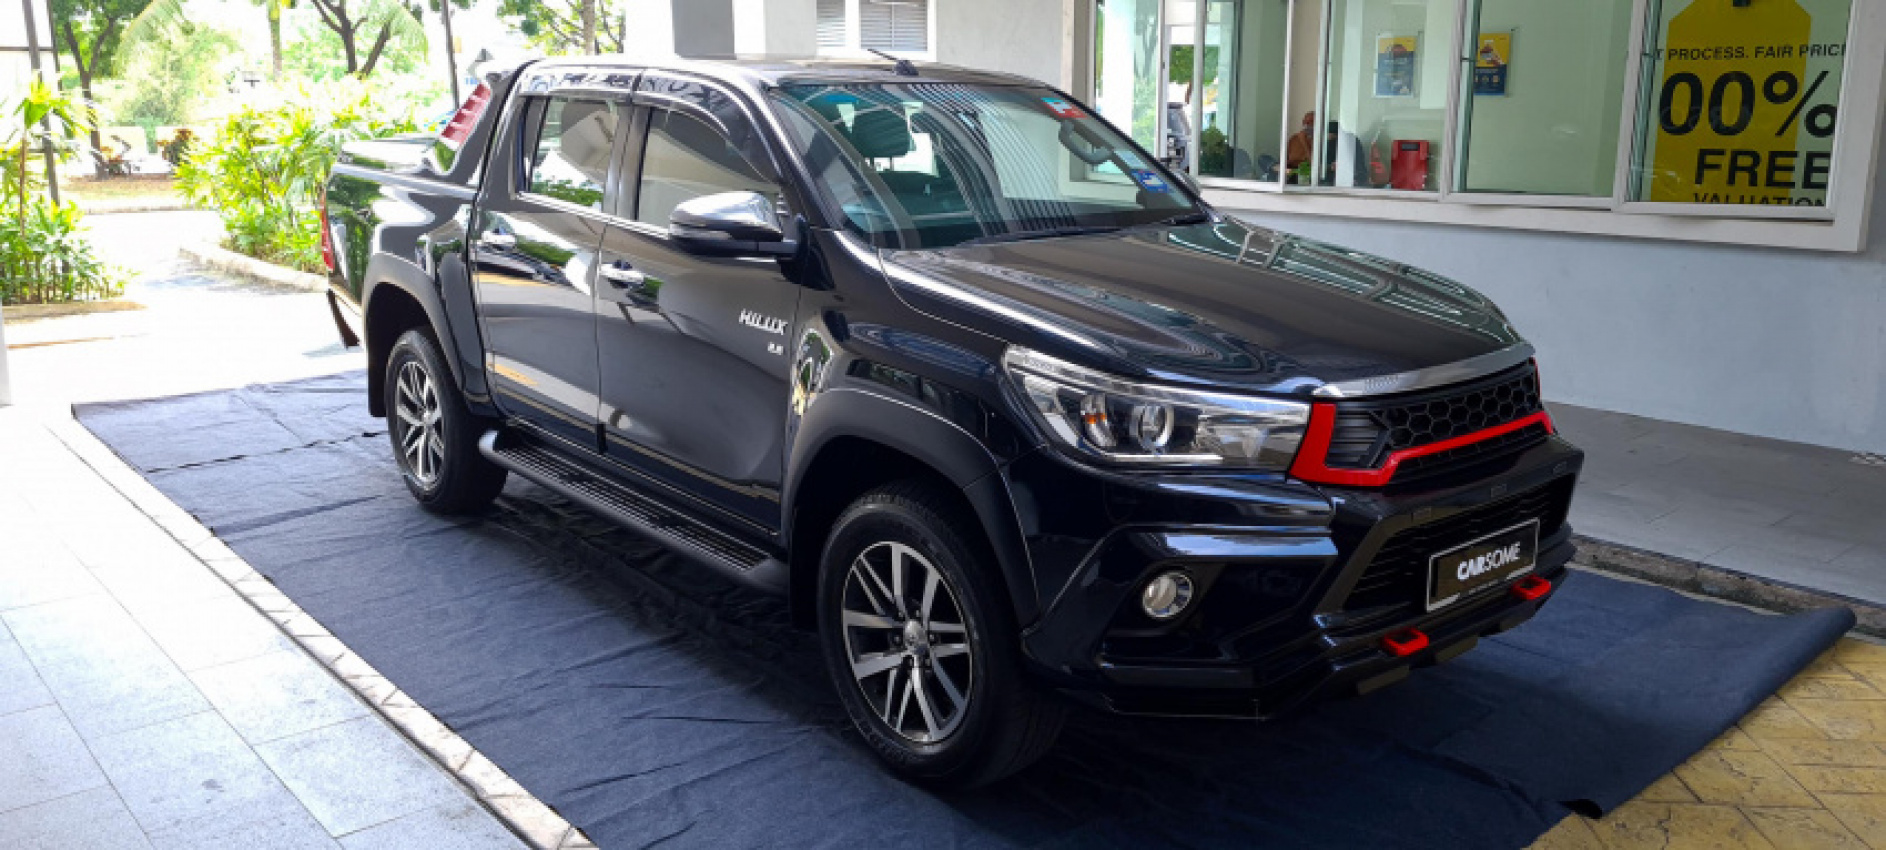 autos, bm, cars, kereta 4×4 pickup truck atau ‘hailak’ paling popular 2021 di malaysia